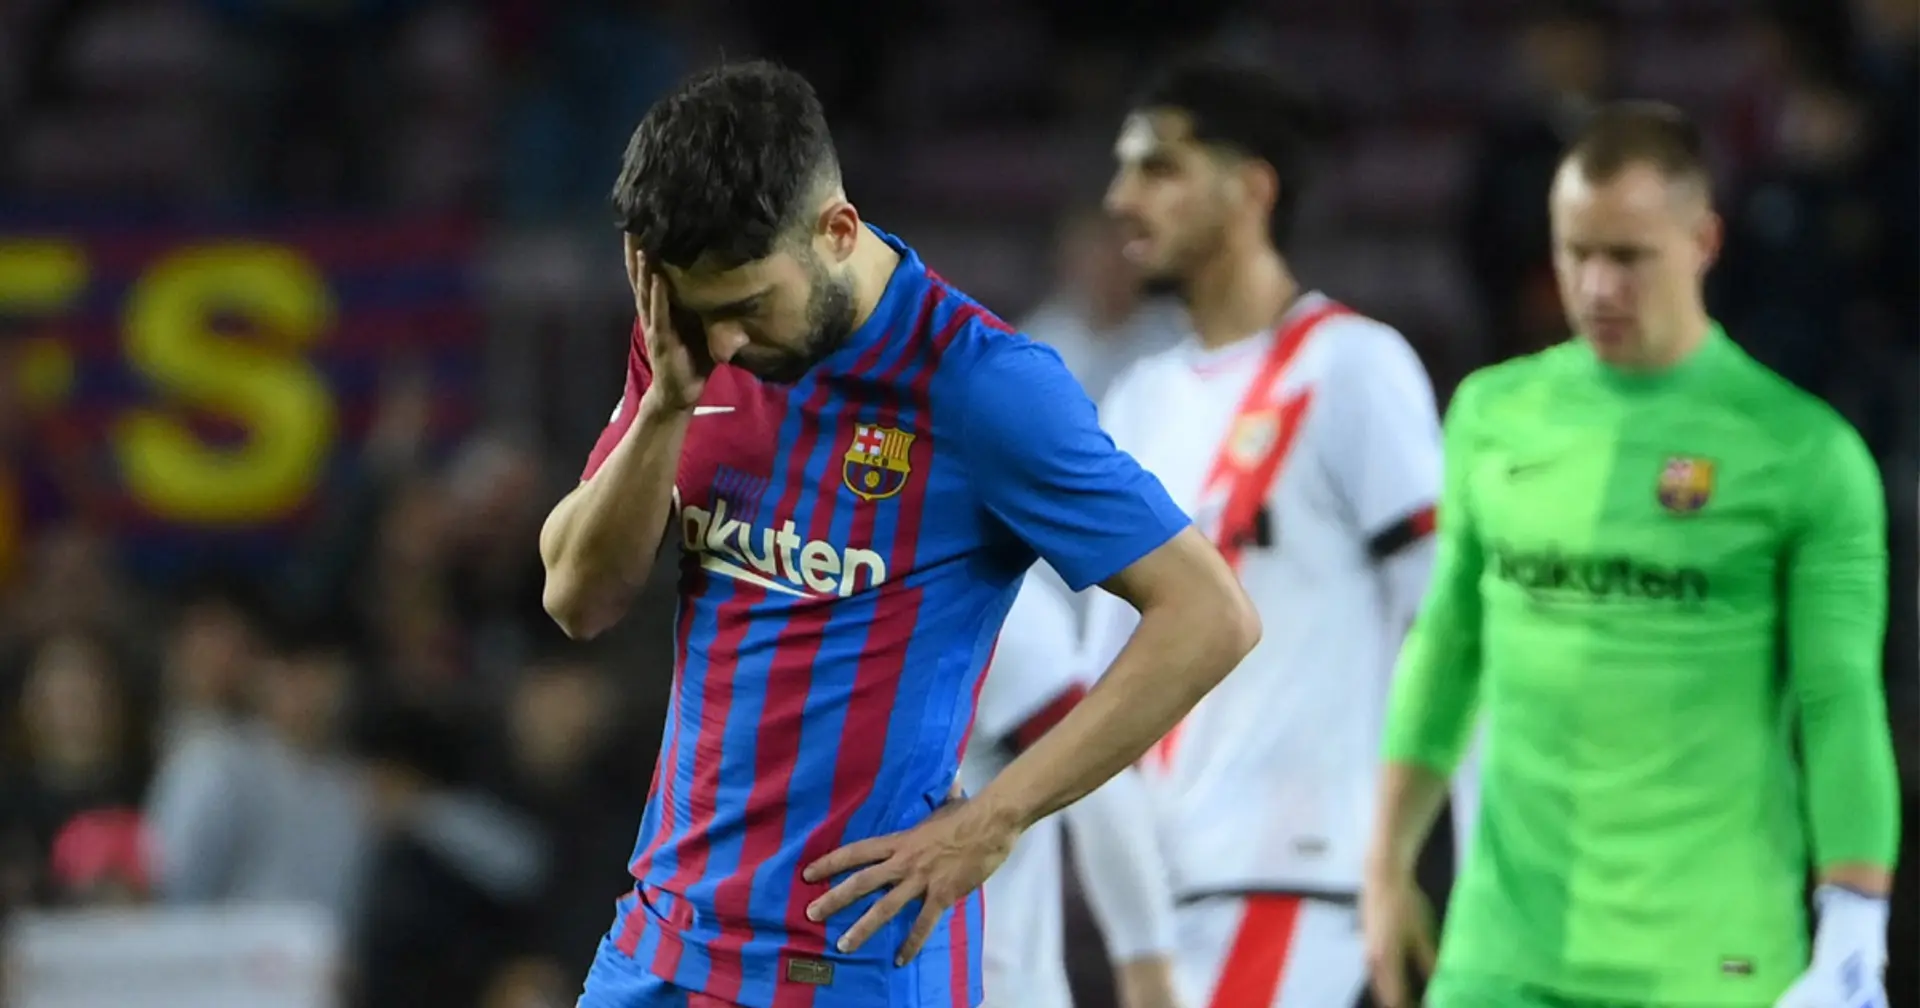 Frenkie - 5, Auba - 3: valoración de los jugadores del Barça en la derrota ante el Rayo Vallecano